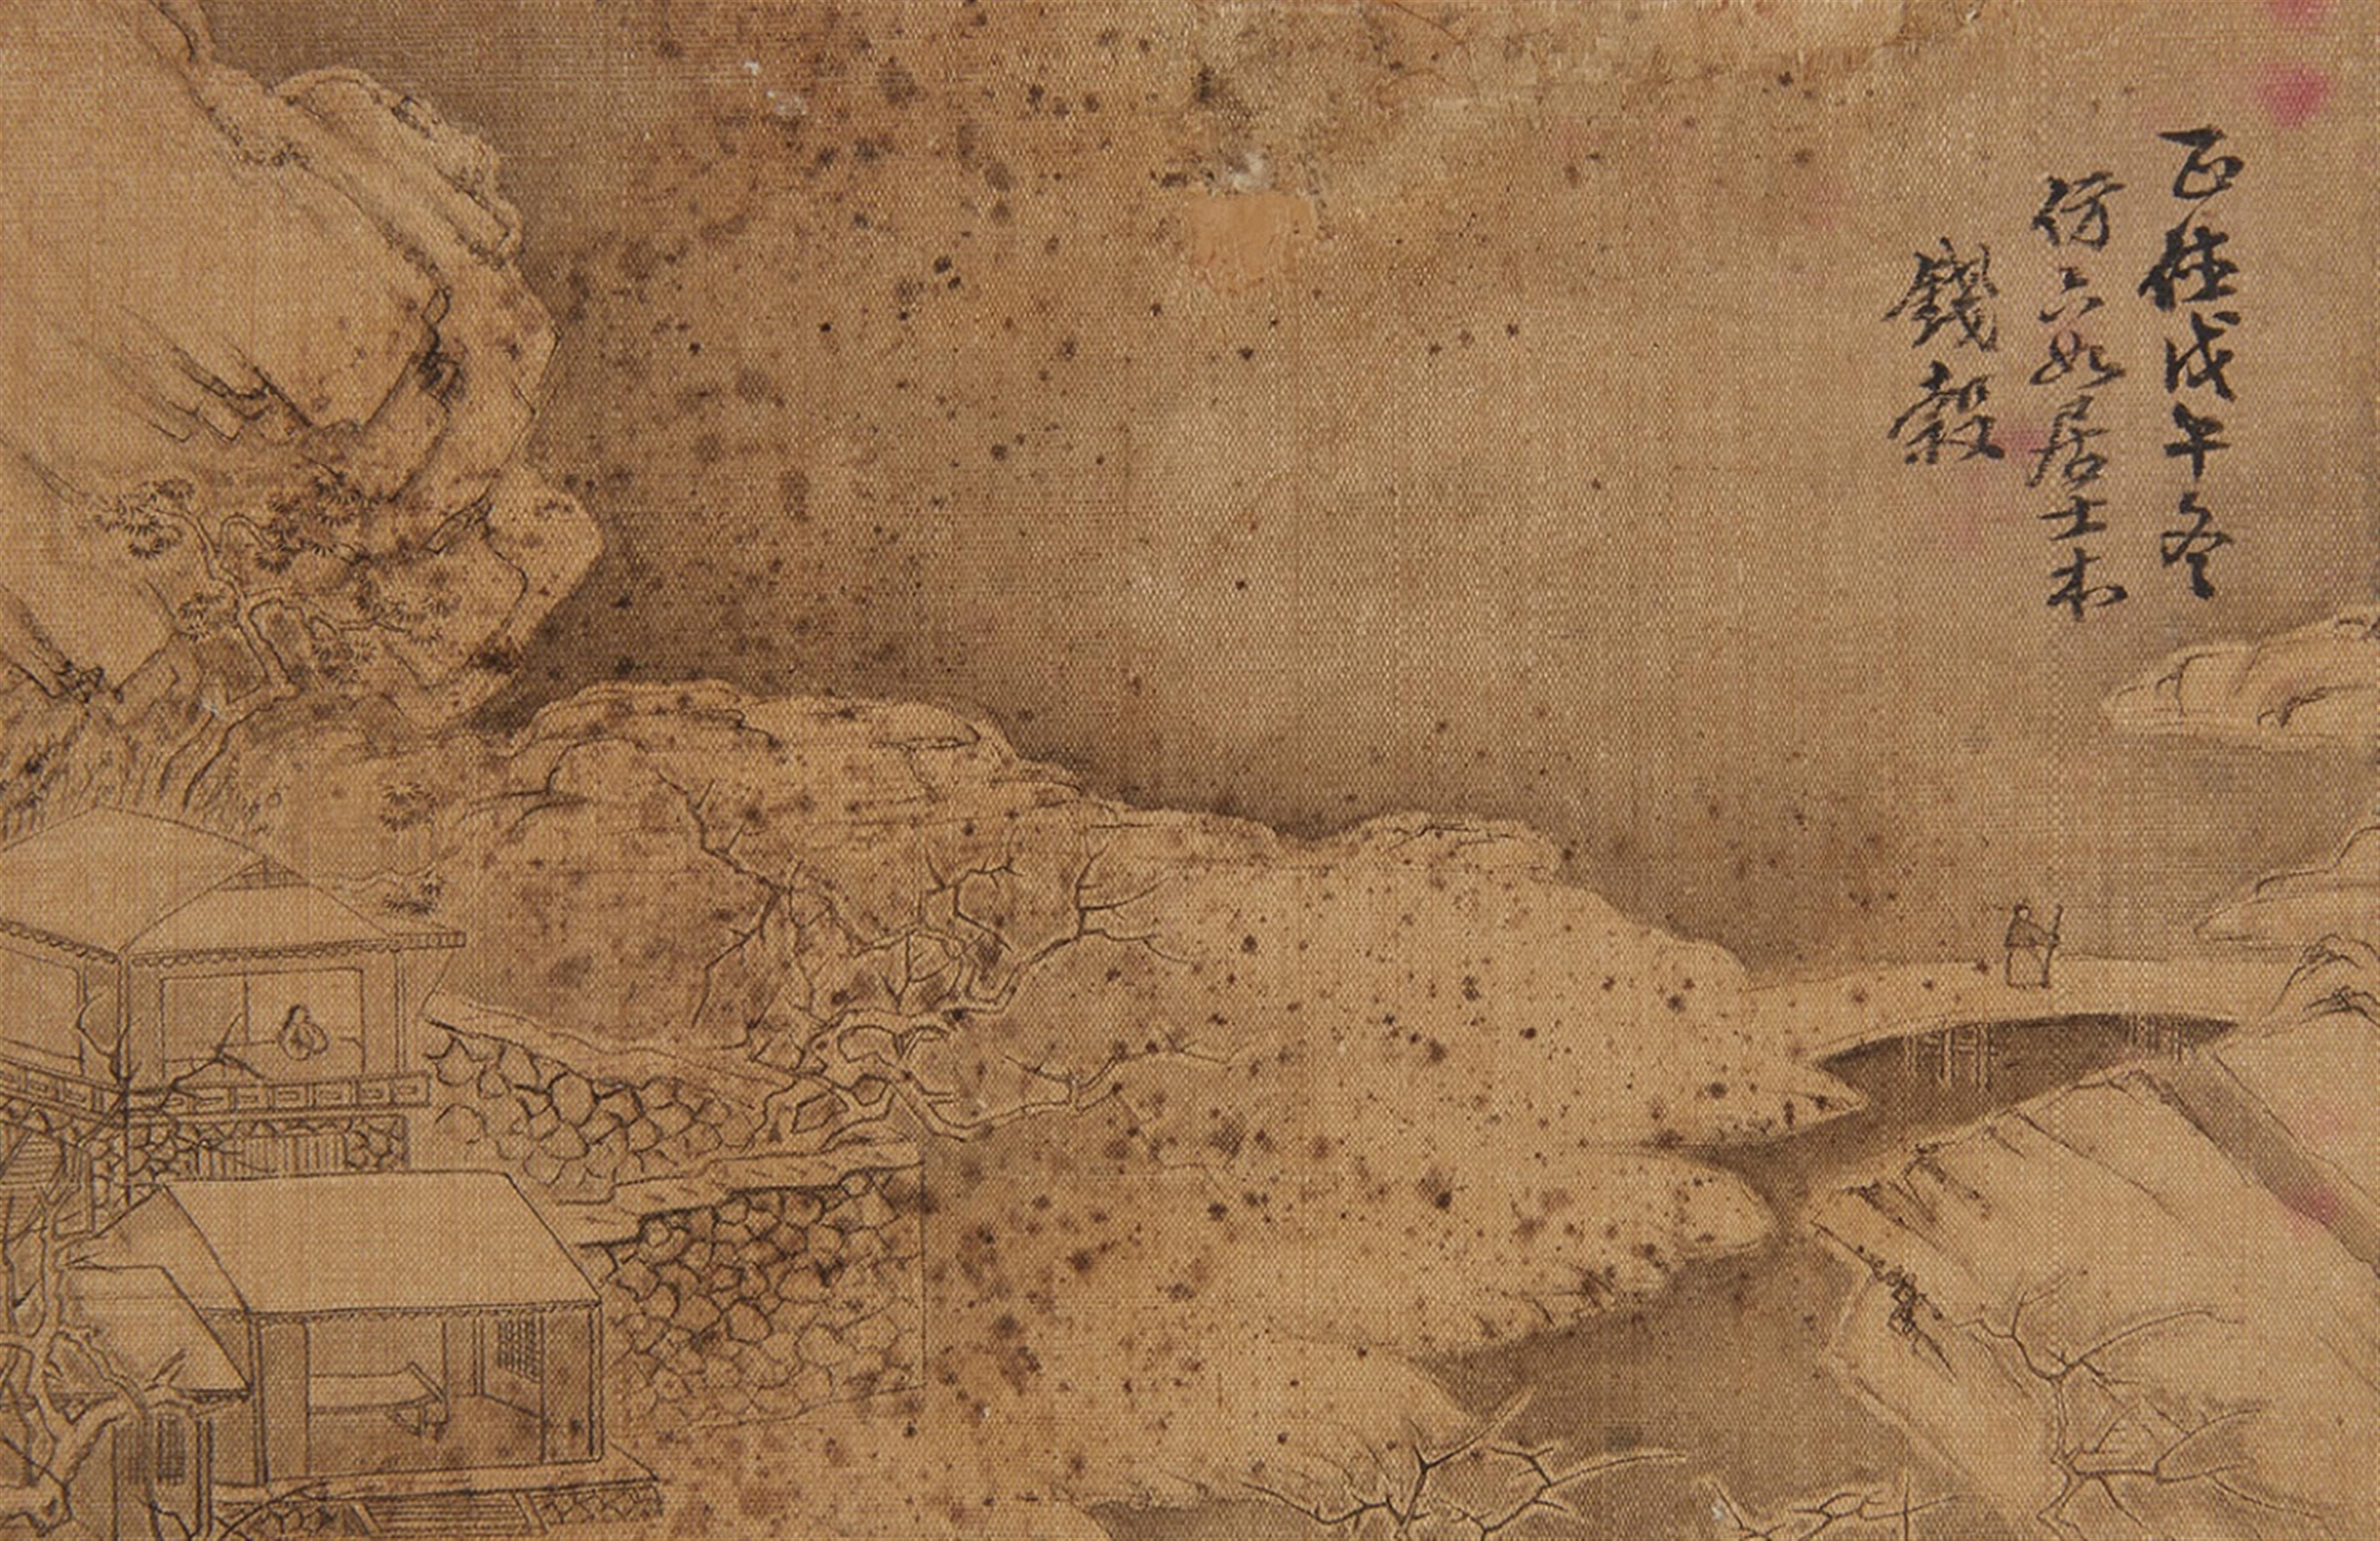 Qian Gu, in der Art - Album mit dem Titel "Ming Qian Gu shanshui ce", bestehend aus sechs losen Doppelseiten mit Landschaftdarstellungen im Stil des Qian Gu (1508-1578). Wasserschäden. Stoff bespannt... - image-1